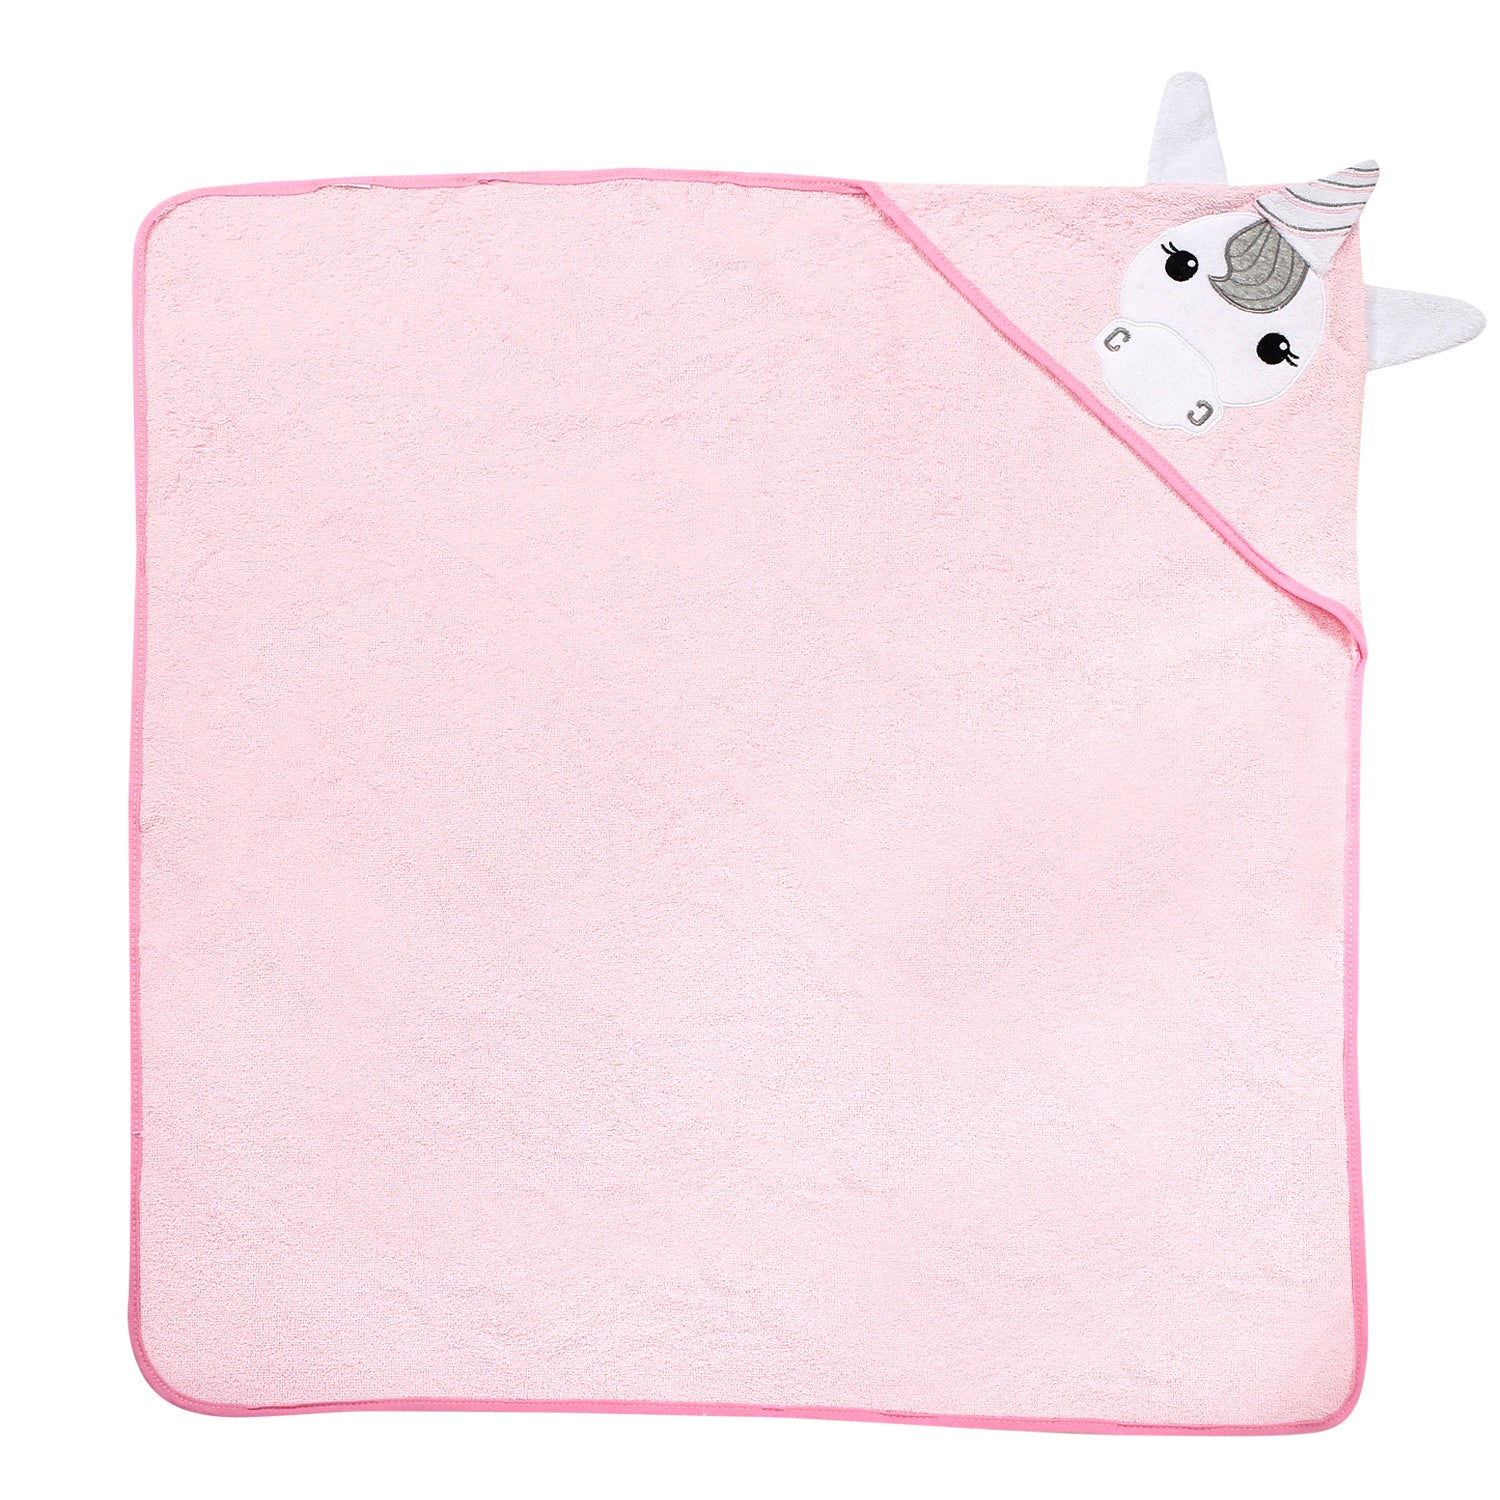 Baby Moo Flying Unicorn Pink Unicorn Hooded Towel